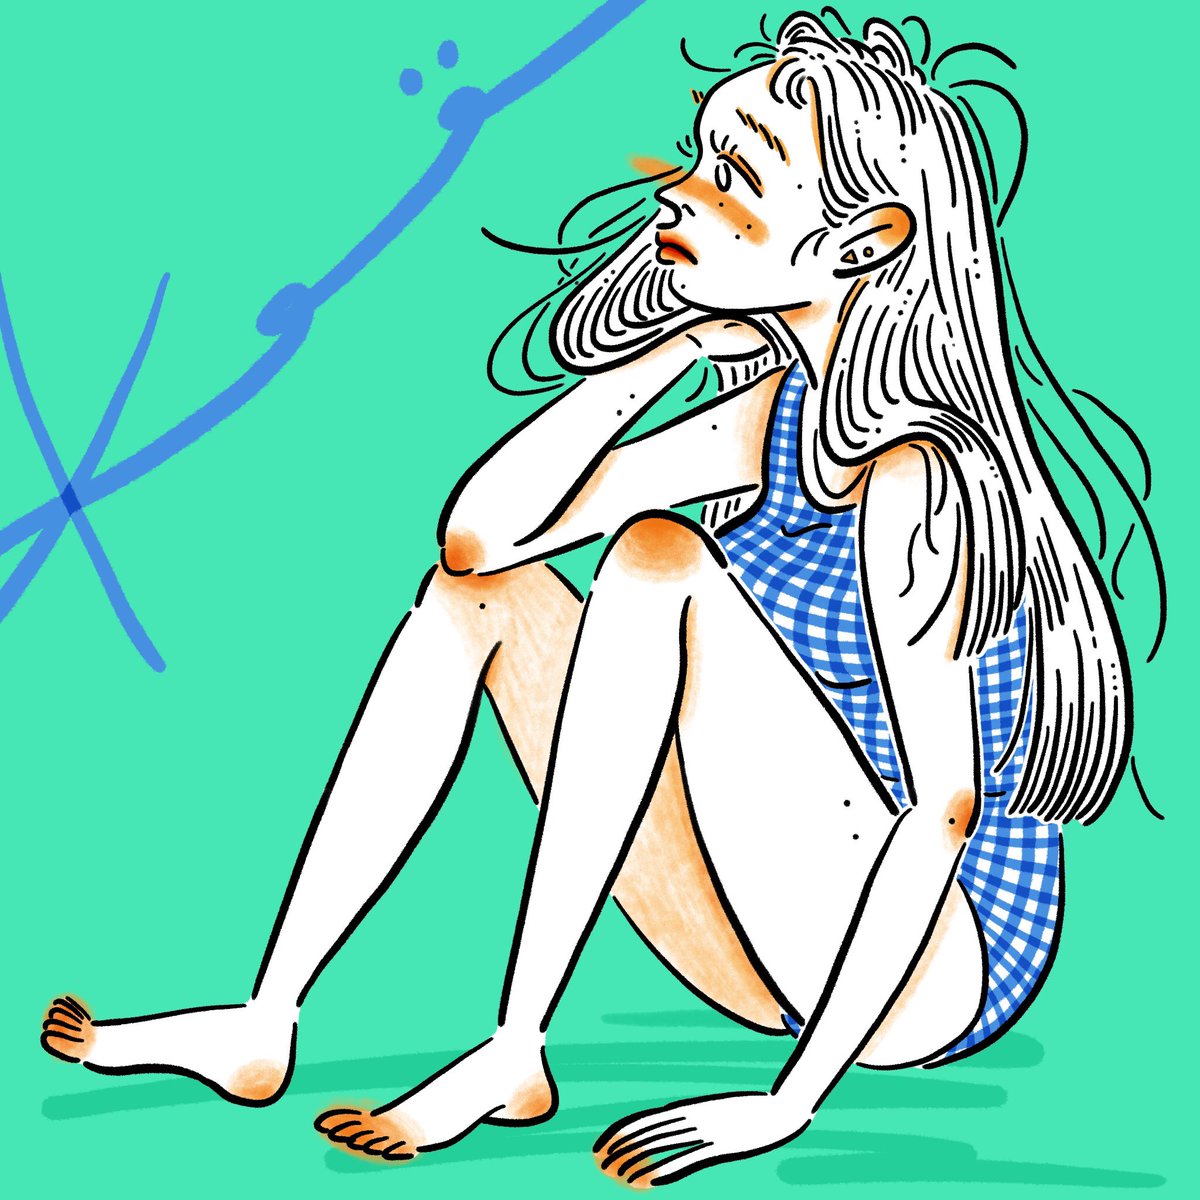 Kame On Twitter 韓国のすごくかわいい水着のブランドを教えてもらって 印象に残ってたのだけどちょっとデザインちがったな とてもかわいかった Art Illustration Illustrator Illust Drawing Girl イラスト イラストレーター 絵 일러스트 絵描き